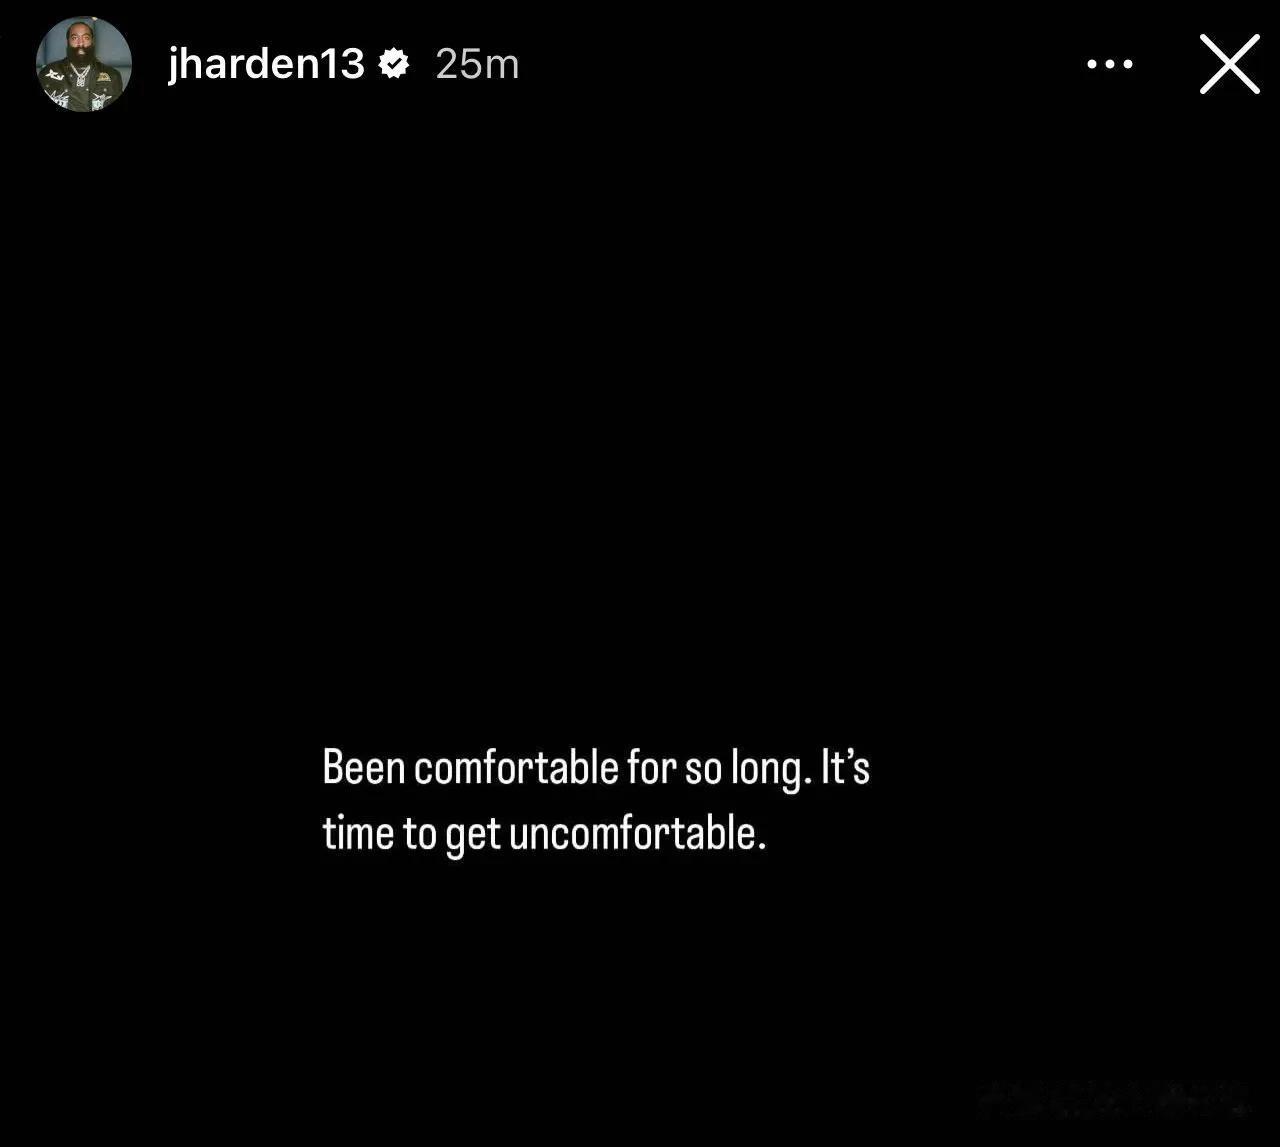 “舒服太久了，是时候不舒服了”
詹姆斯哈登想要跳出他的舒适圈
哈登在IG上发布了(1)